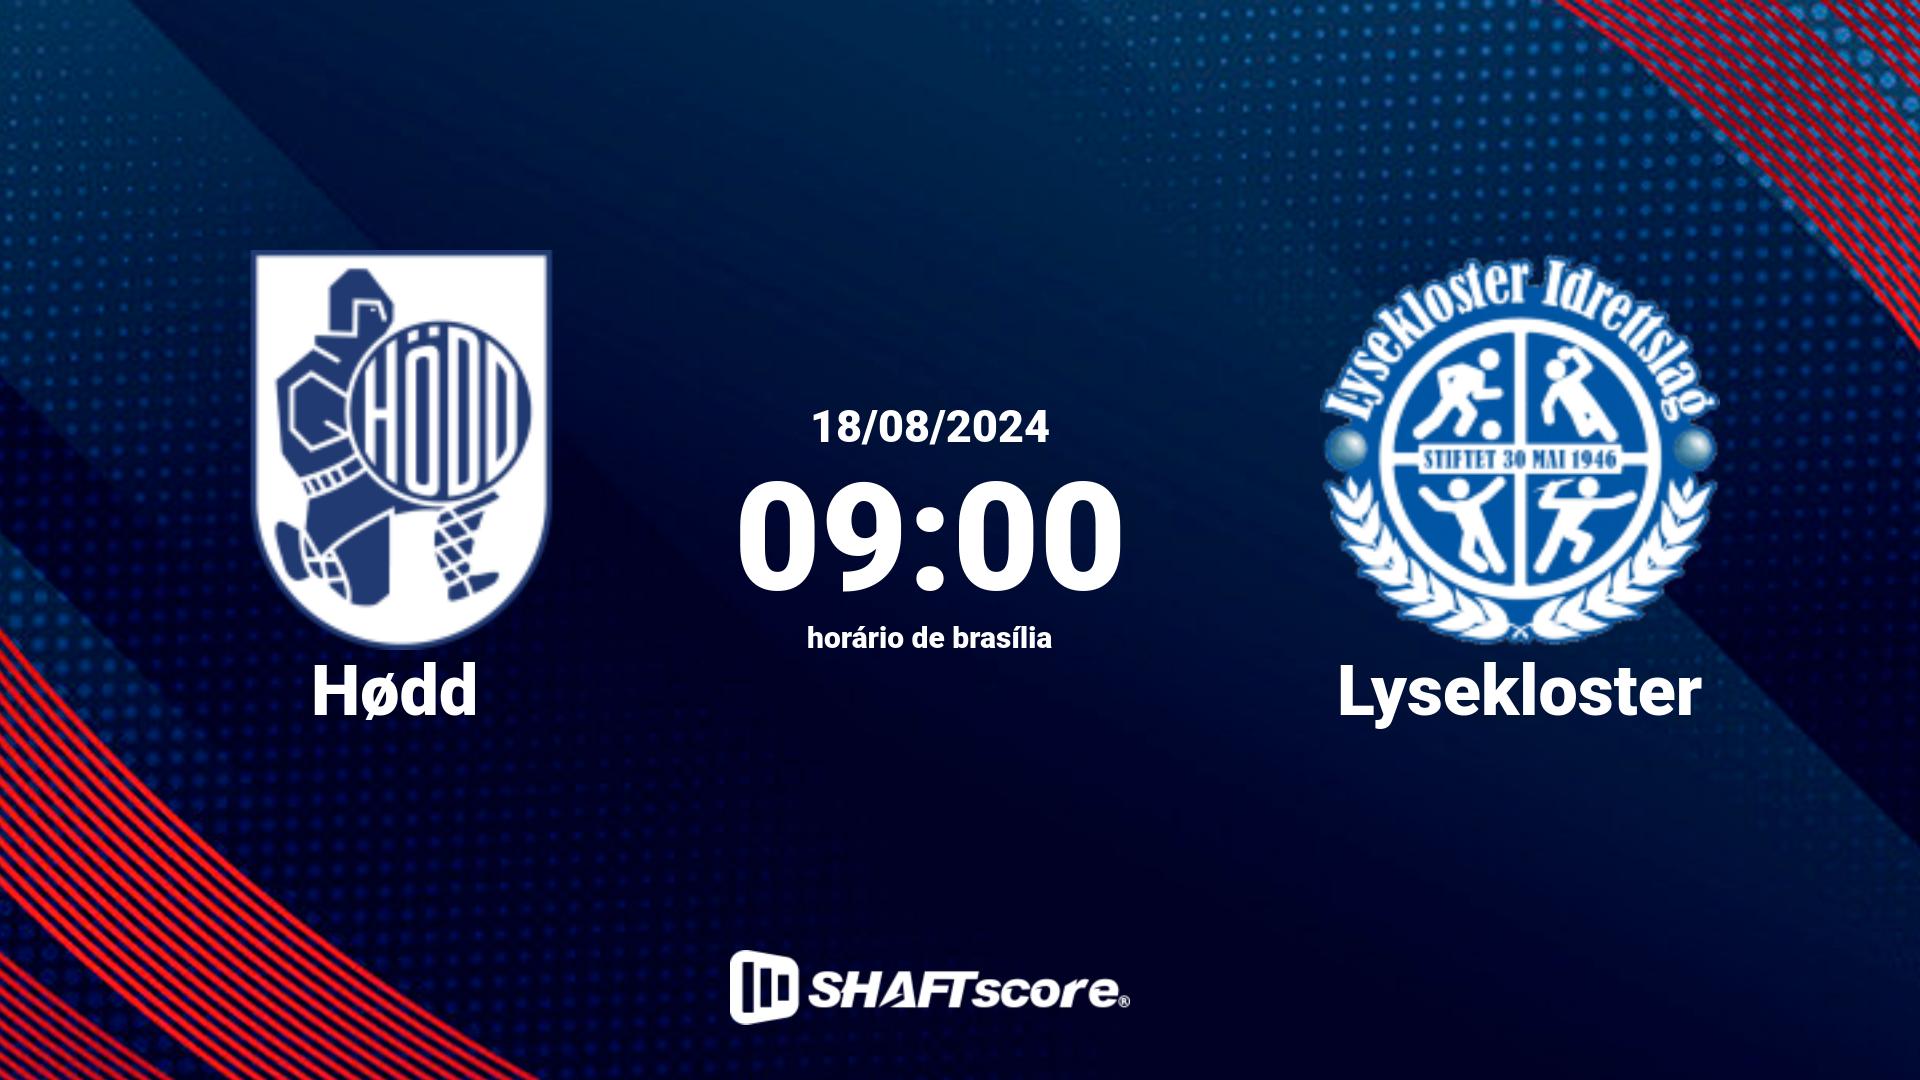 Estatísticas do jogo Hødd vs Lysekloster 18.08 09:00